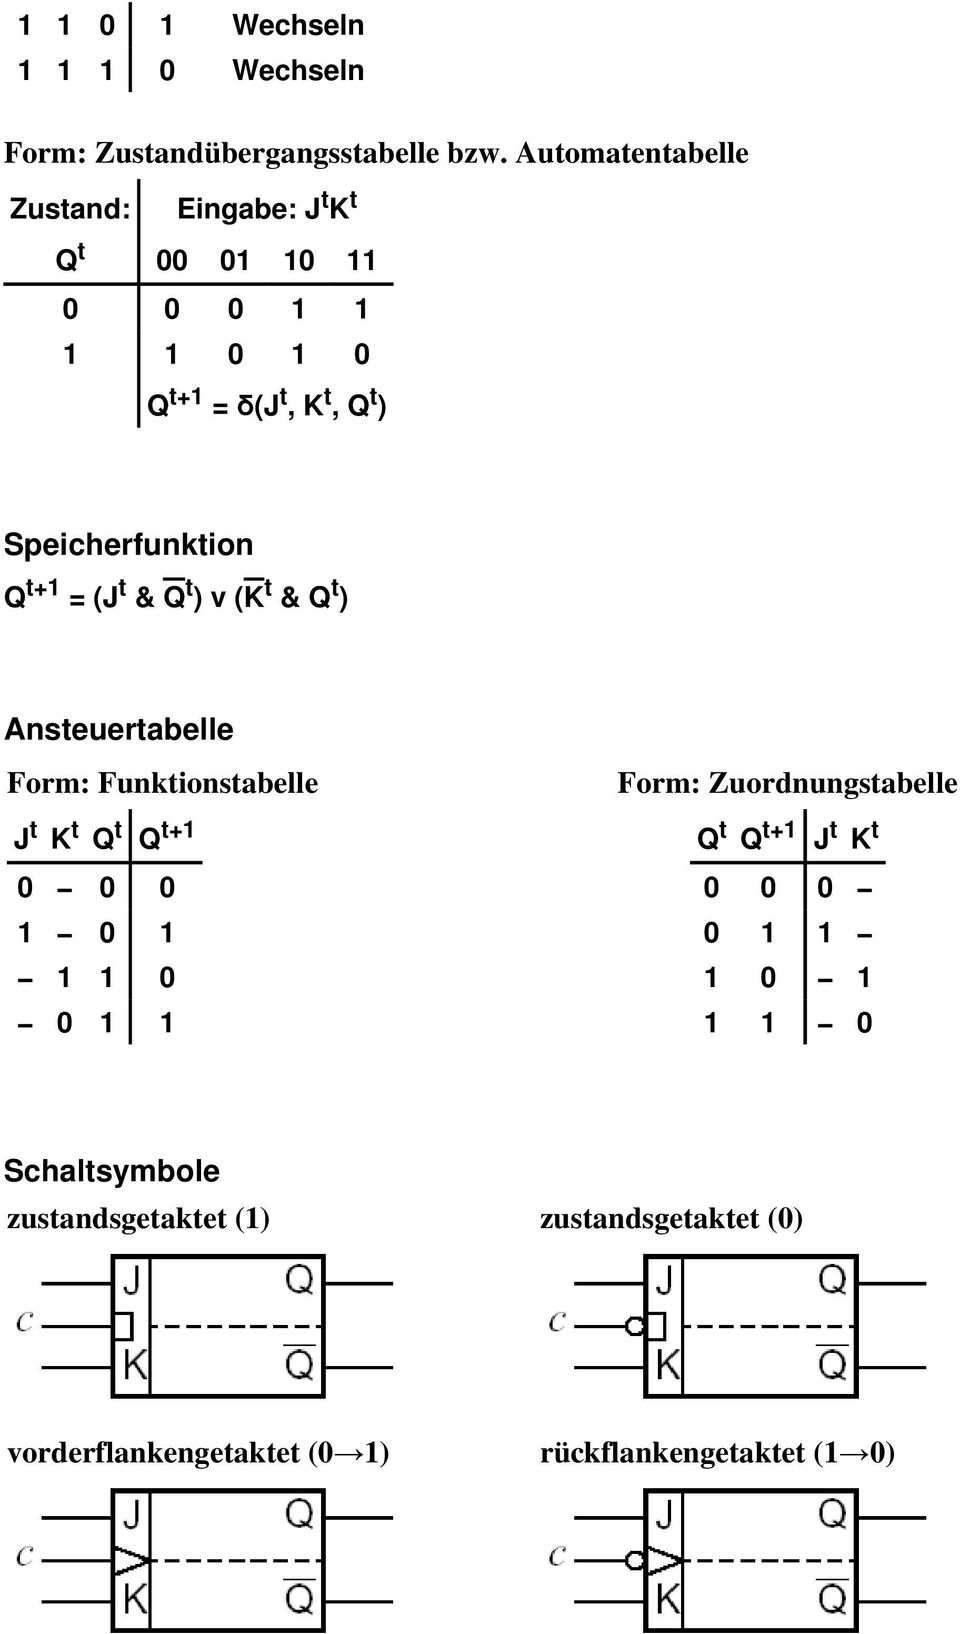 Q t+1 = (J t & Q t ) v (K t & Q t ) Ansteuertabelle Form: Funktionstabelle J t K t Q t Q t+1 0 0 0 1 0 1 1 1 0 0 1 1